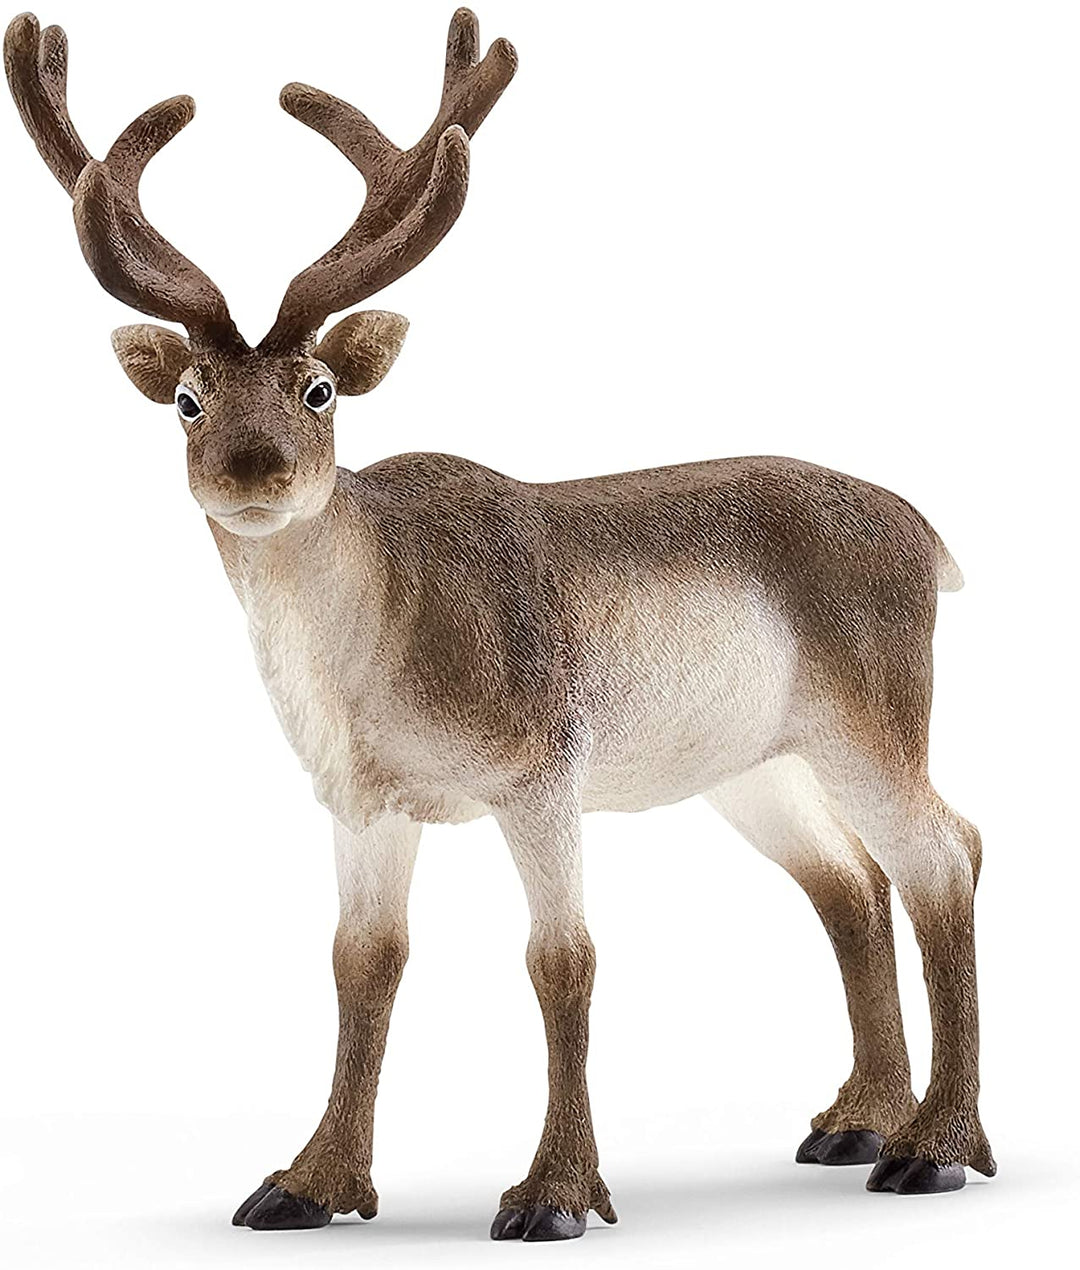 Schleich 14837 Reindeer Wild Life